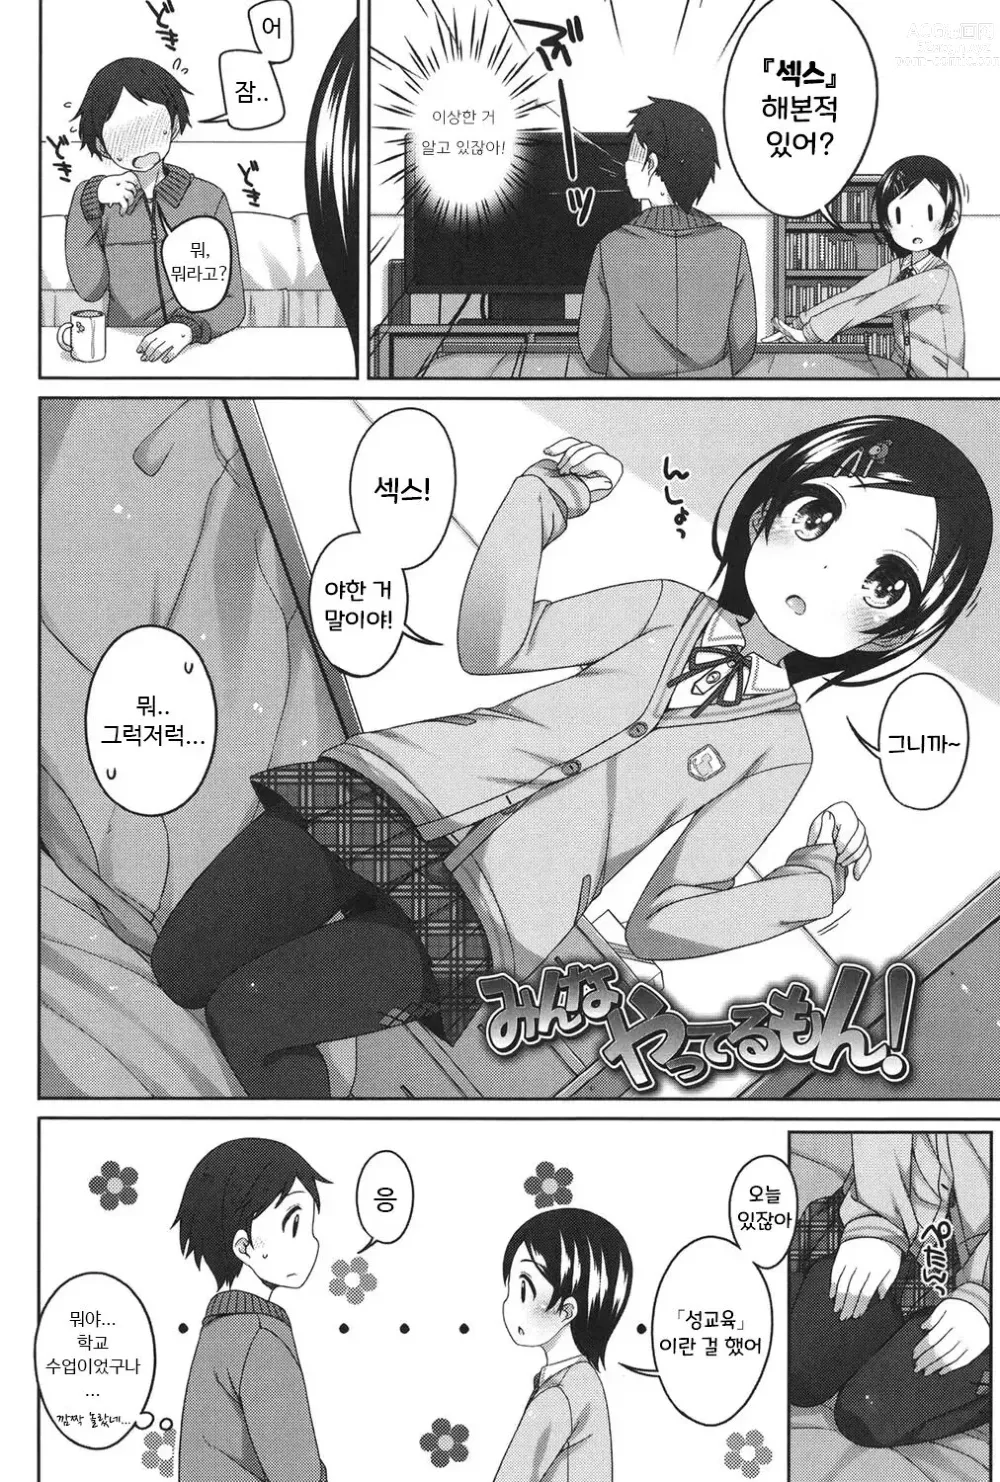 Page 2 of manga Minna Yatteru mon!